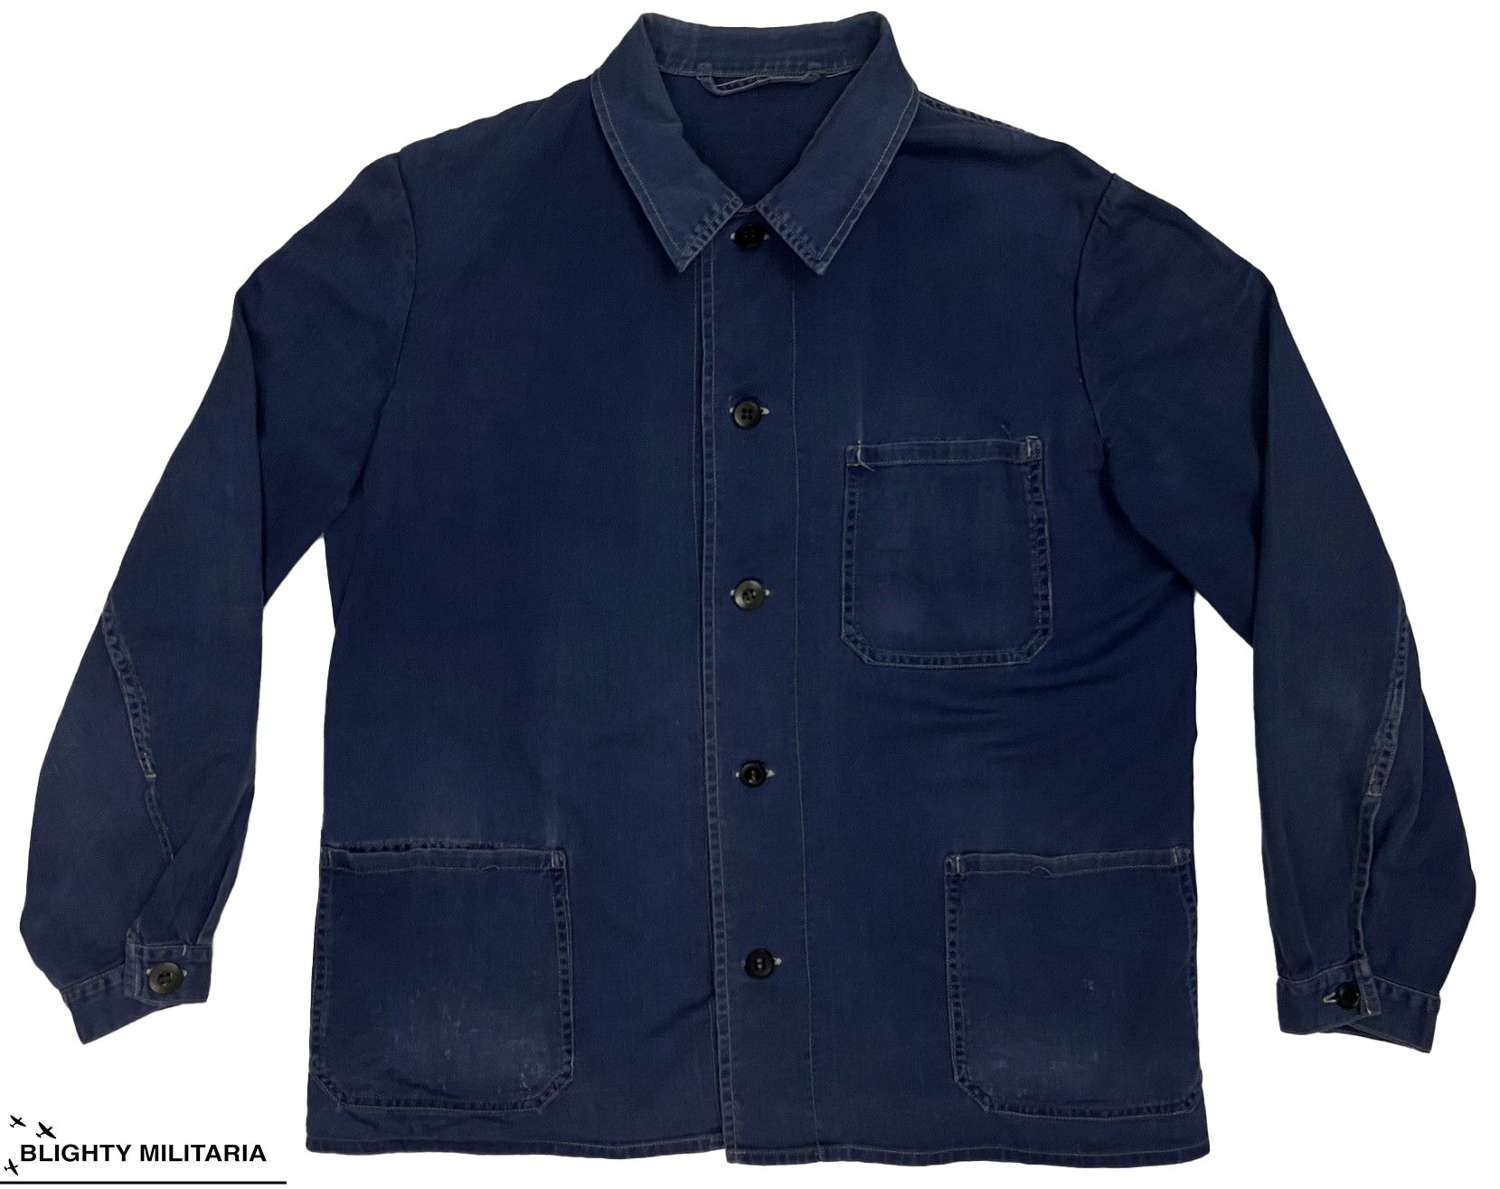 Original 1970s German Lightweight Cotton Work Jacket